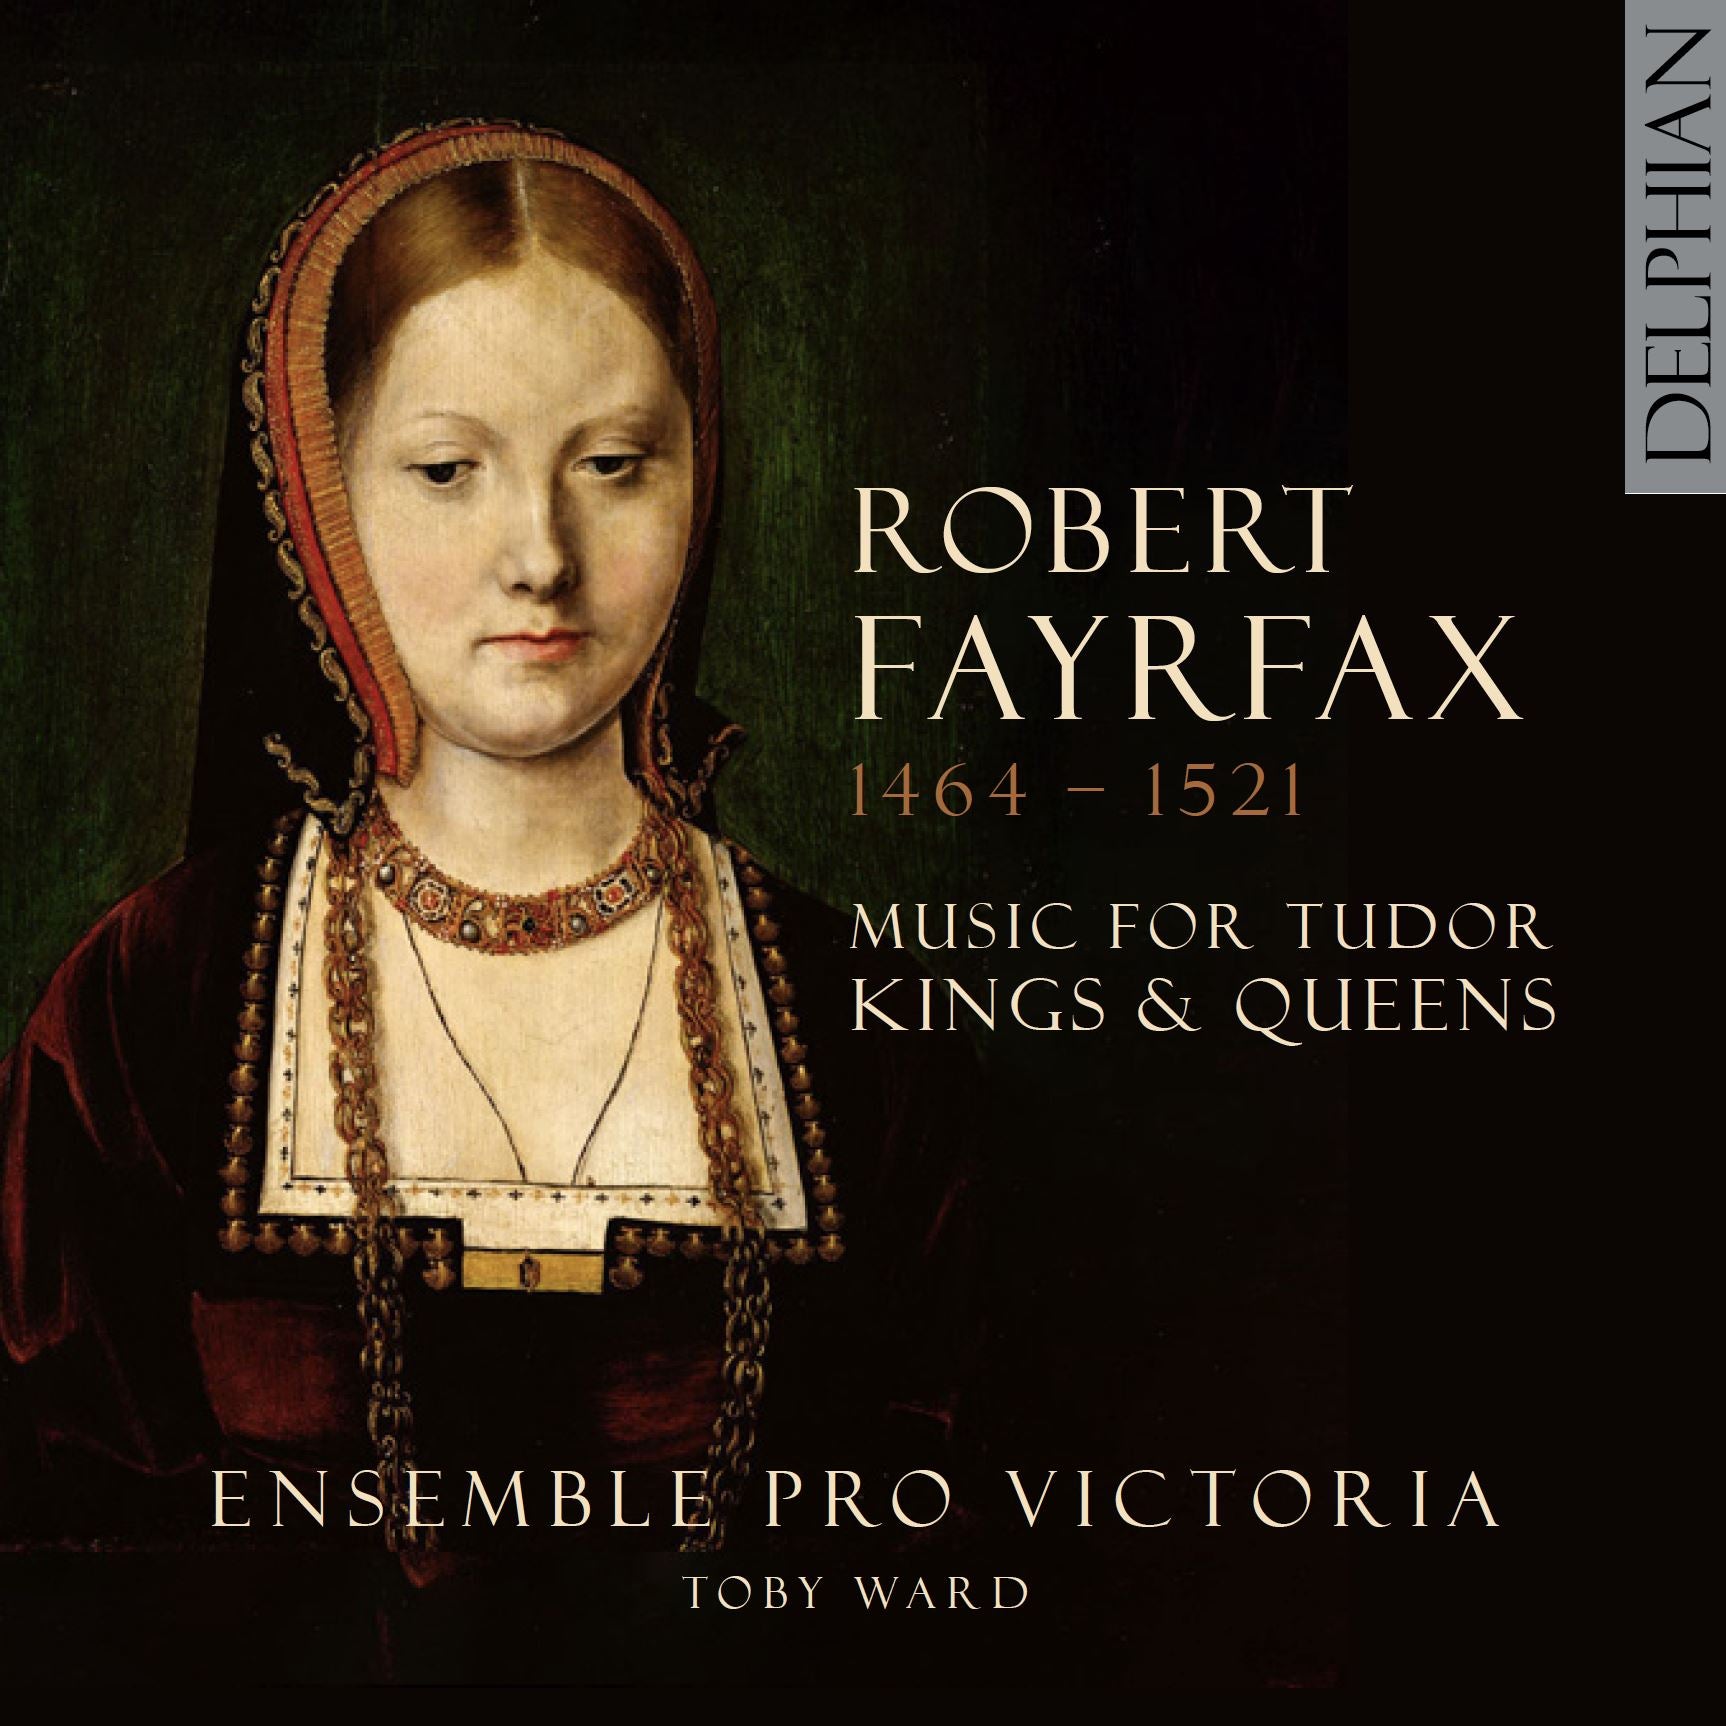 Robert Fayrfax (1464 - 1521): Music for Tudor Kings & Queens CD Delphian Records